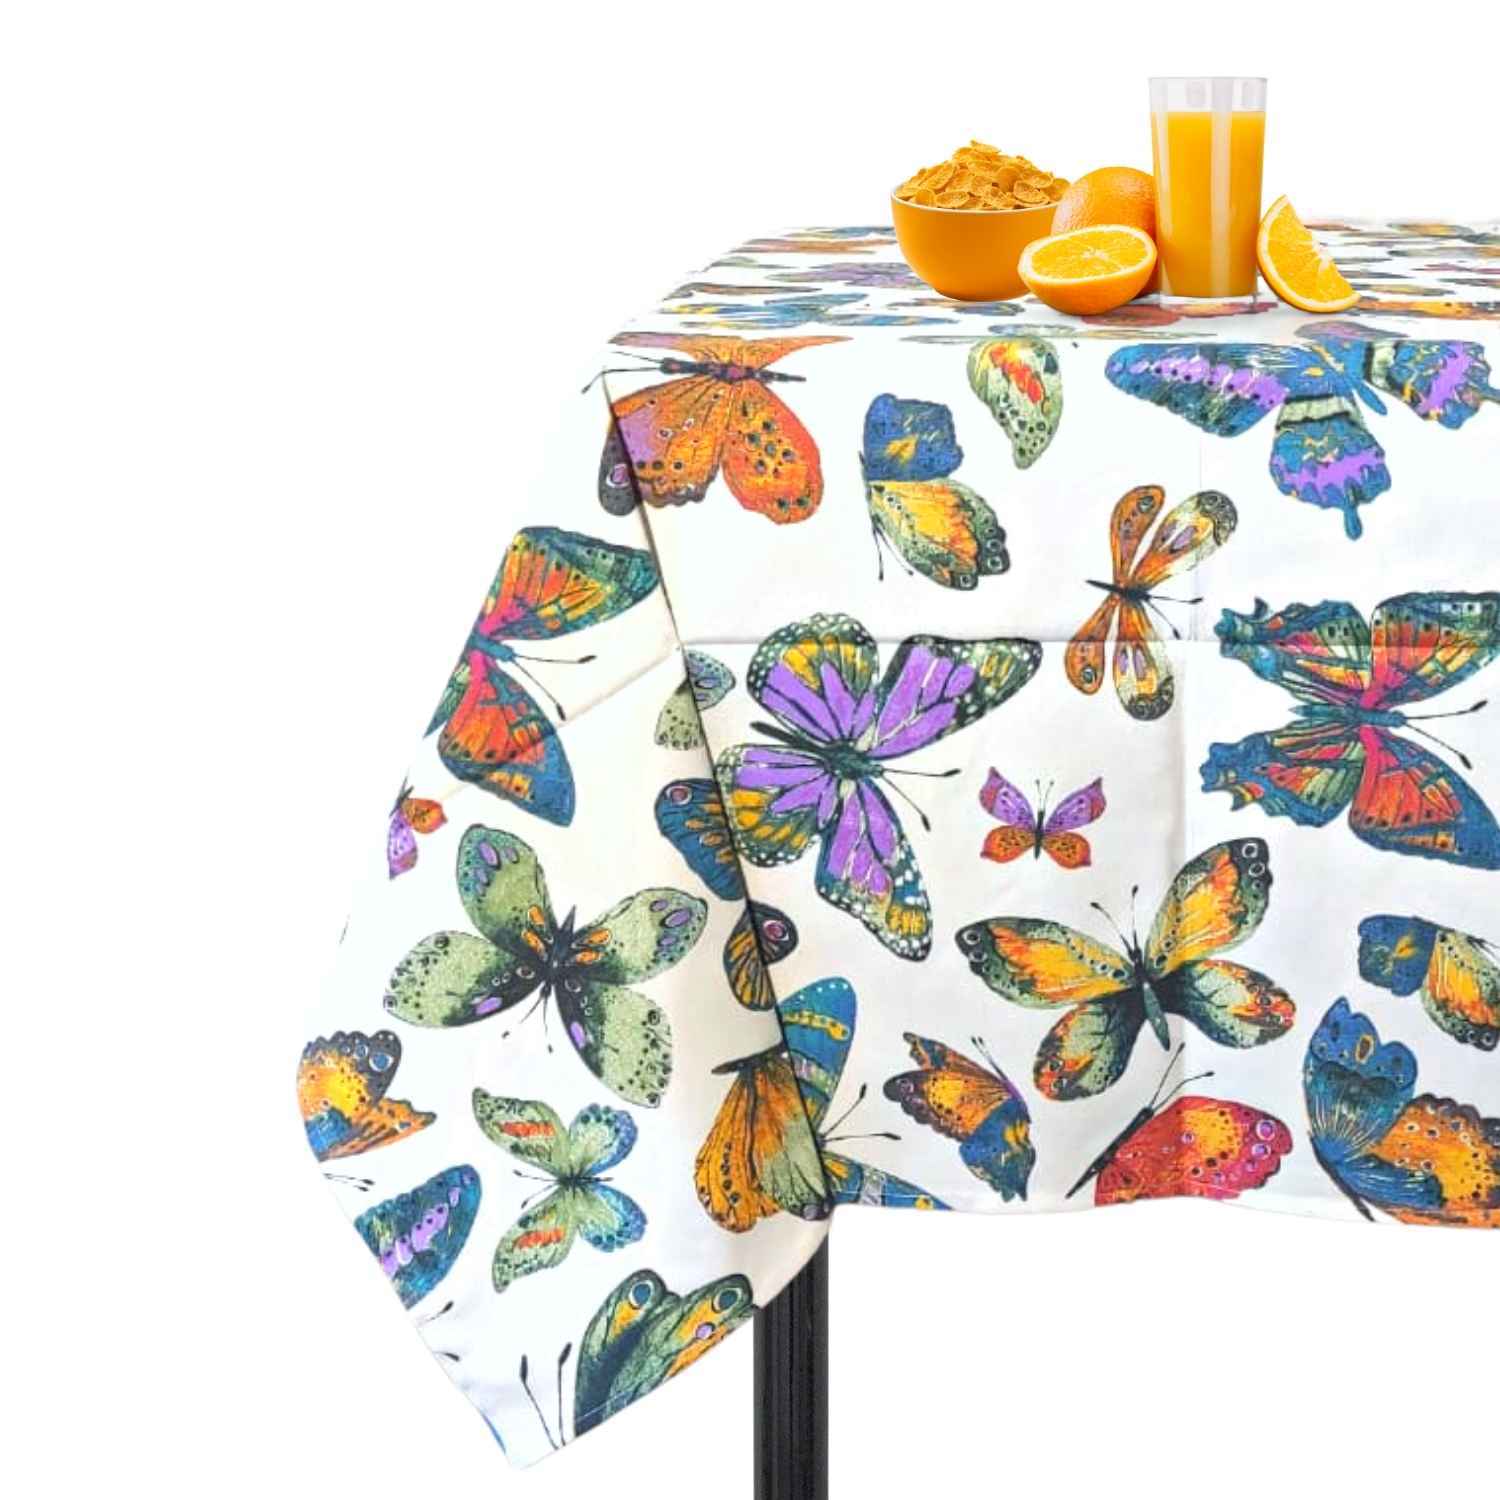 liberty-tovaglia-puro-cotone-made-in-italy-farfalle-primavera-multicolor